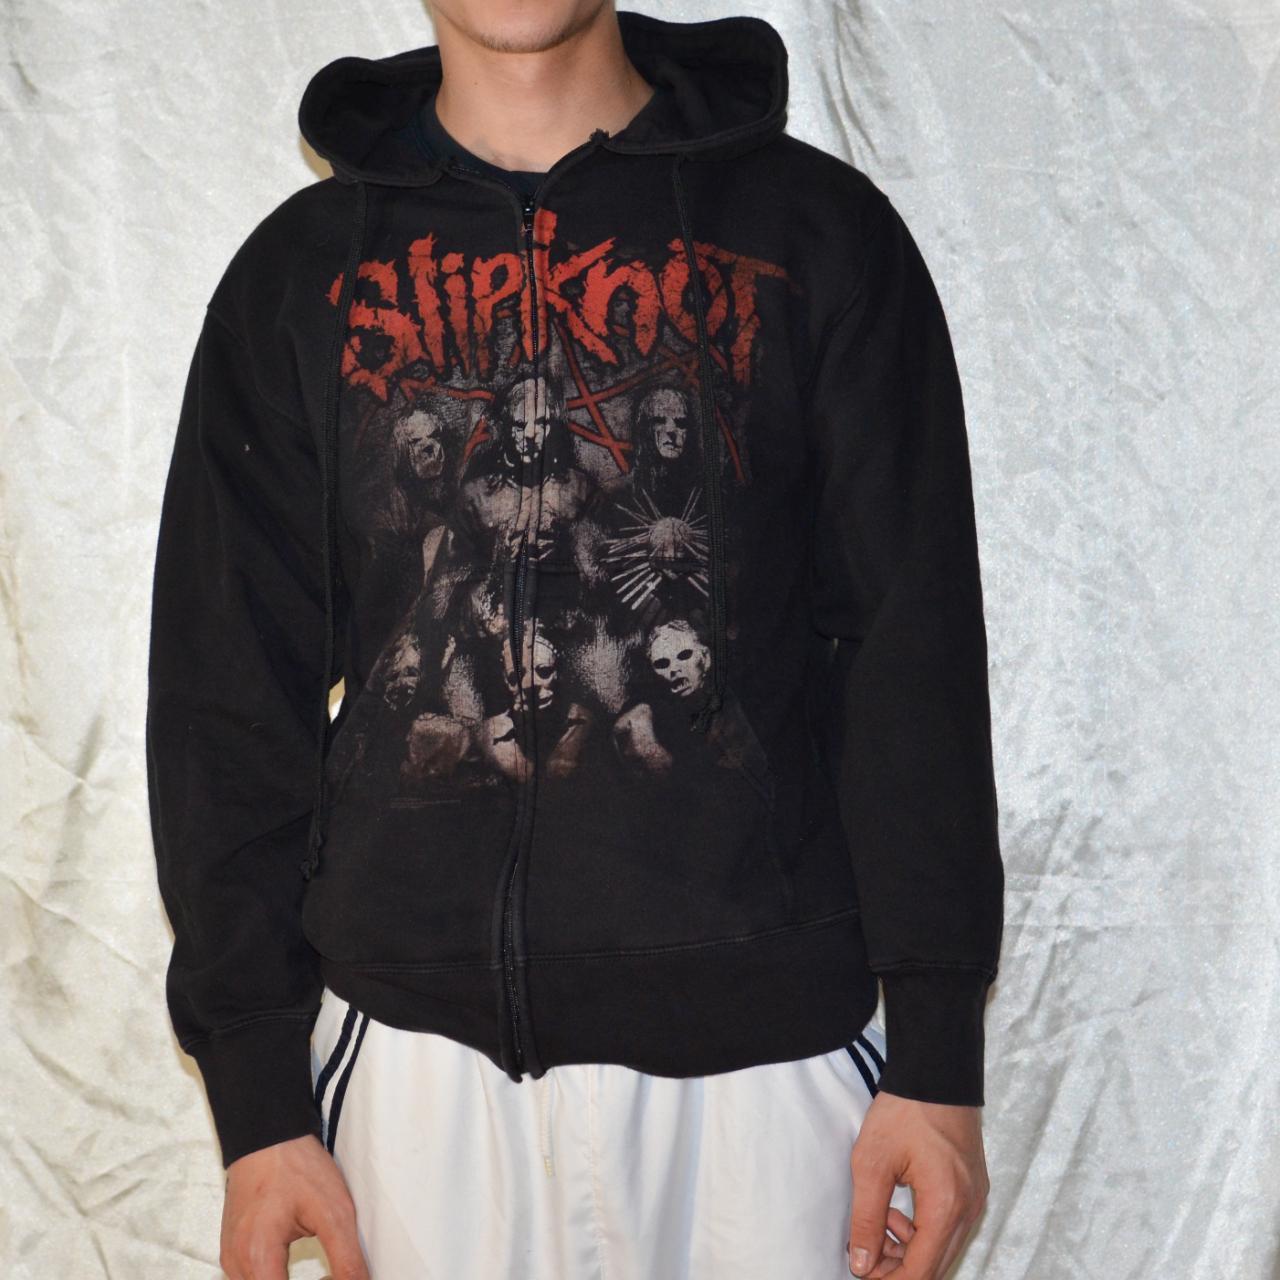 Slipknot Full Zip hoodie by Bravado